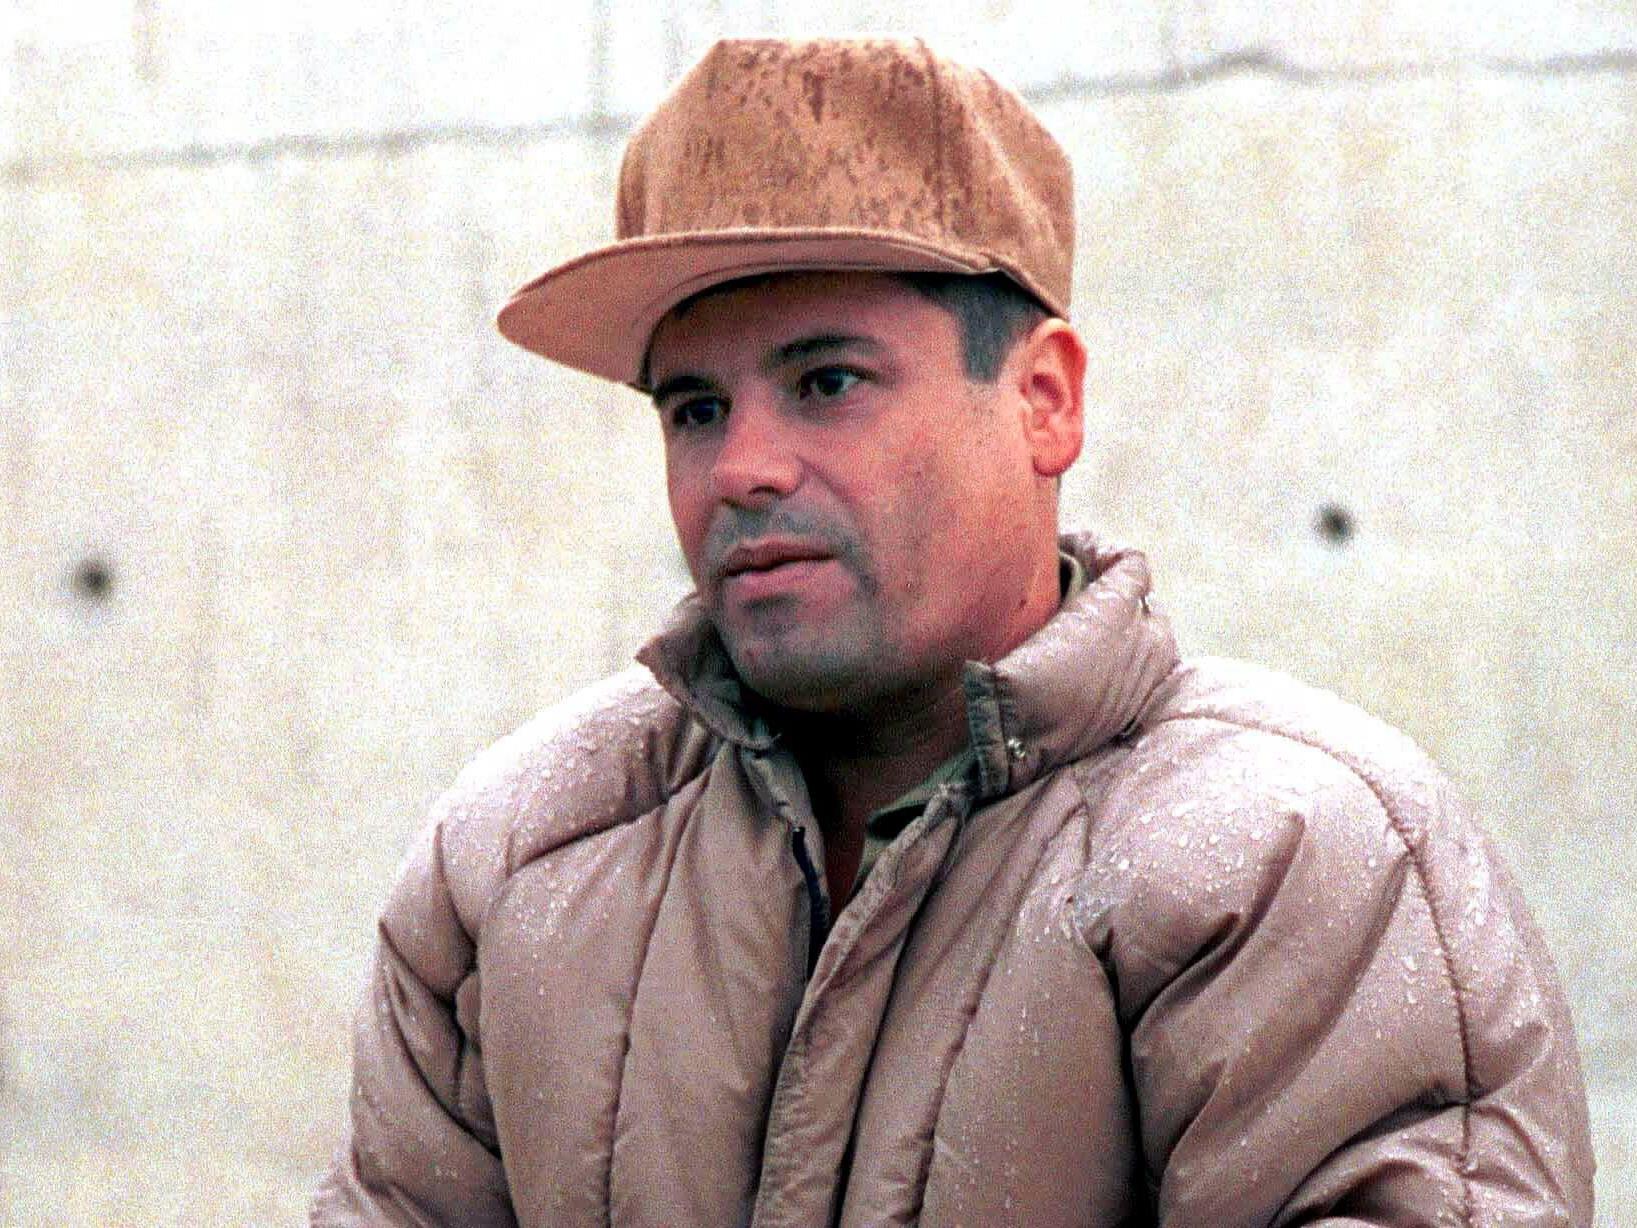 Entzieht sich erfolgreich der Verhaftung: "El Chapo"